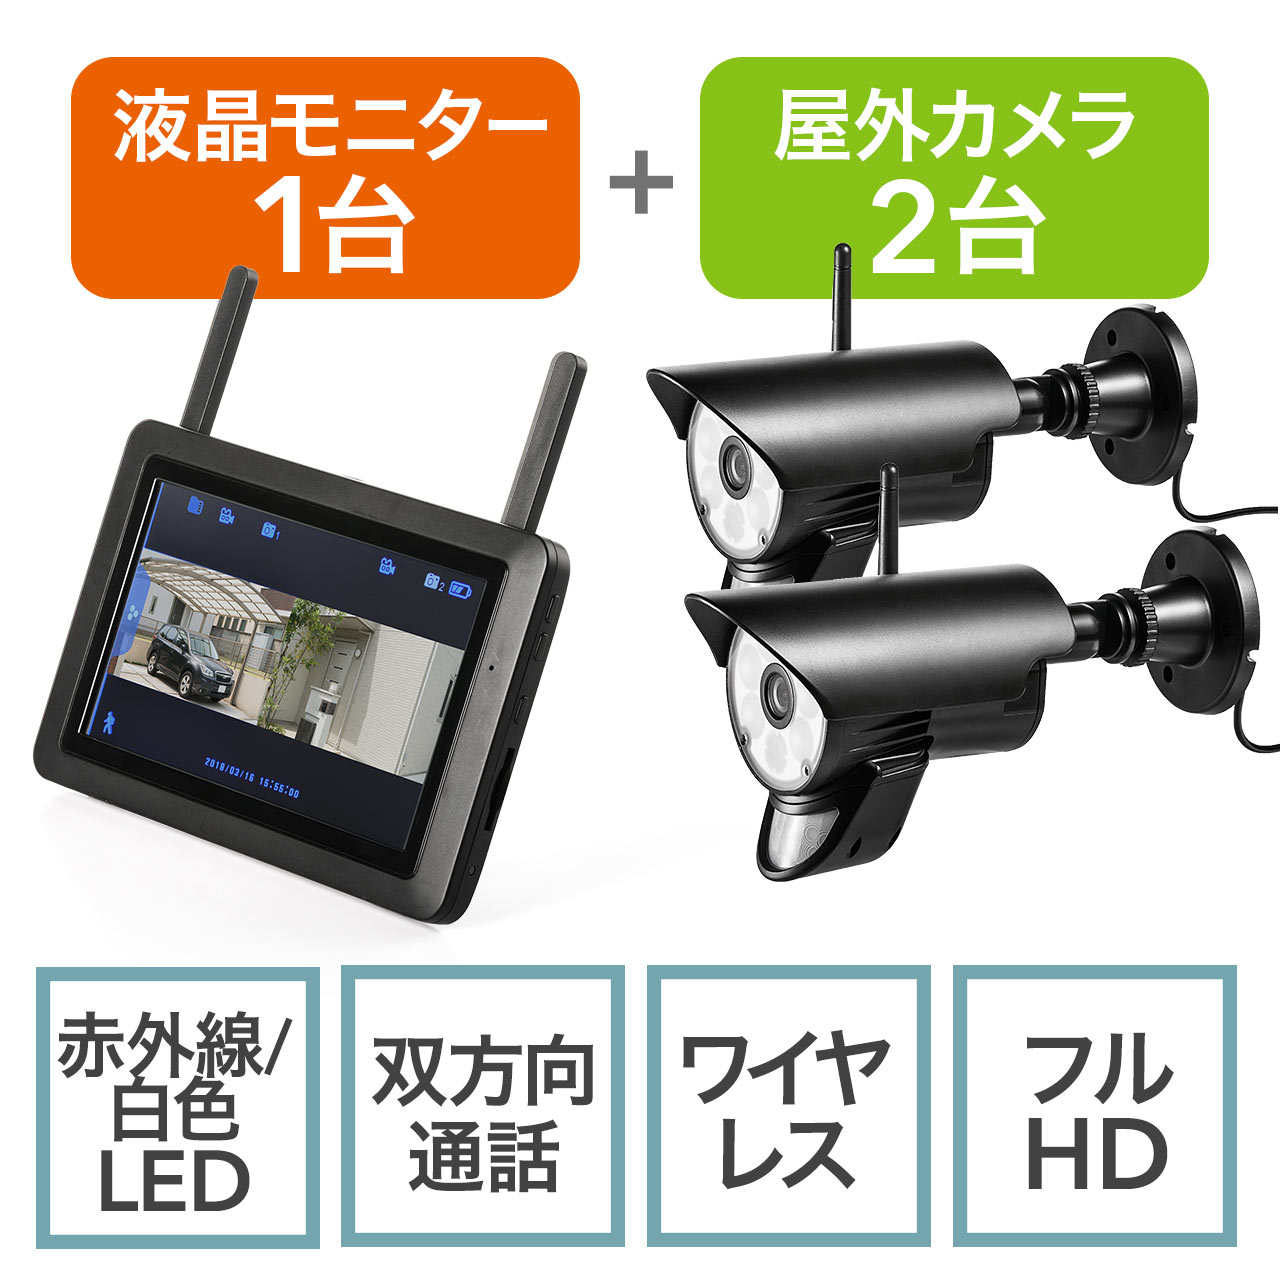 家族共有機能も搭載2台セット☆音声威嚇❣24時間ホームセキュリティを実現♪❤wifi☆防犯カメラ